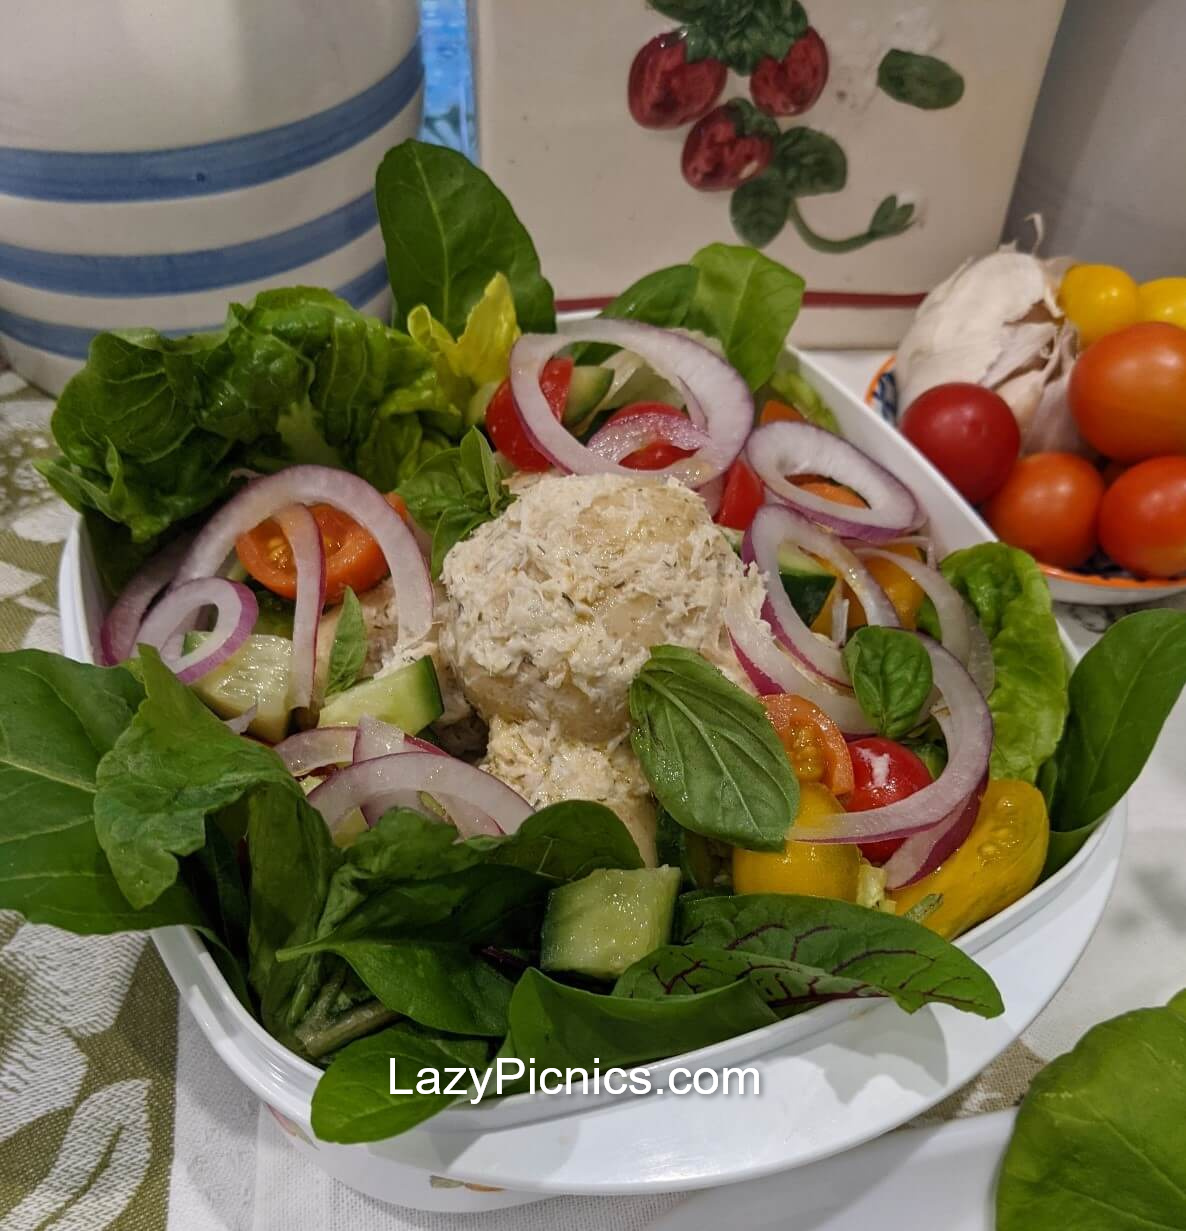 Make Popular Picnic Salad Recipes